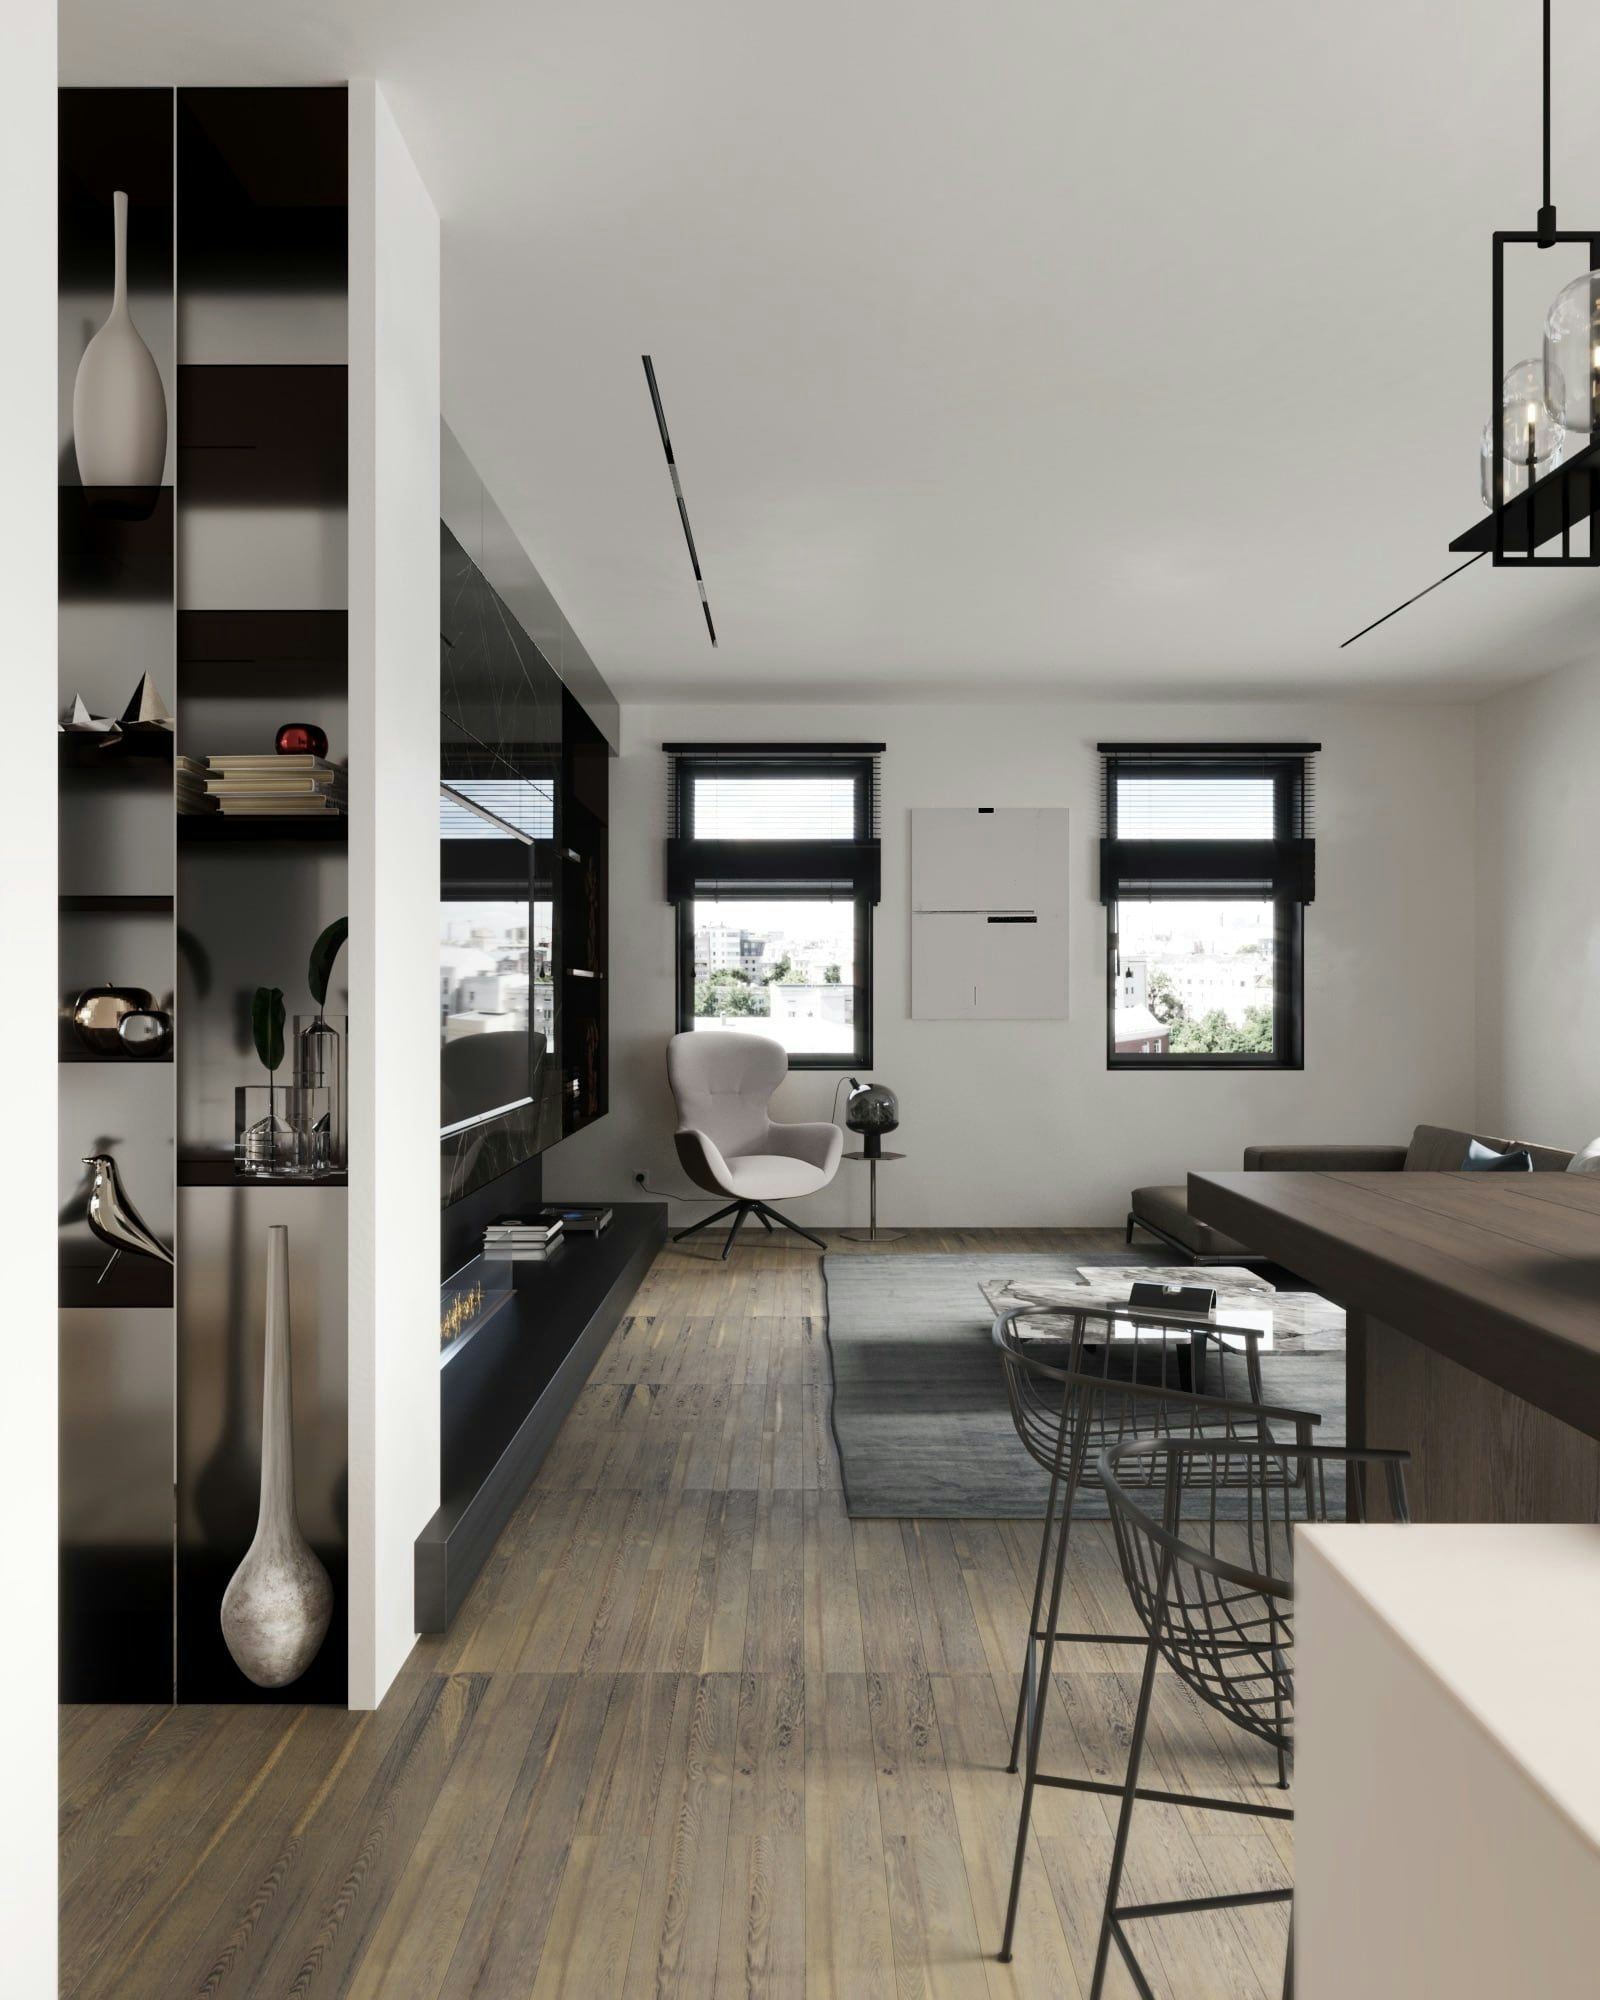 3D Innen Architektur Visualisierung des Wohnraums in einer minimalistischen modernen Wohnung in Berlin